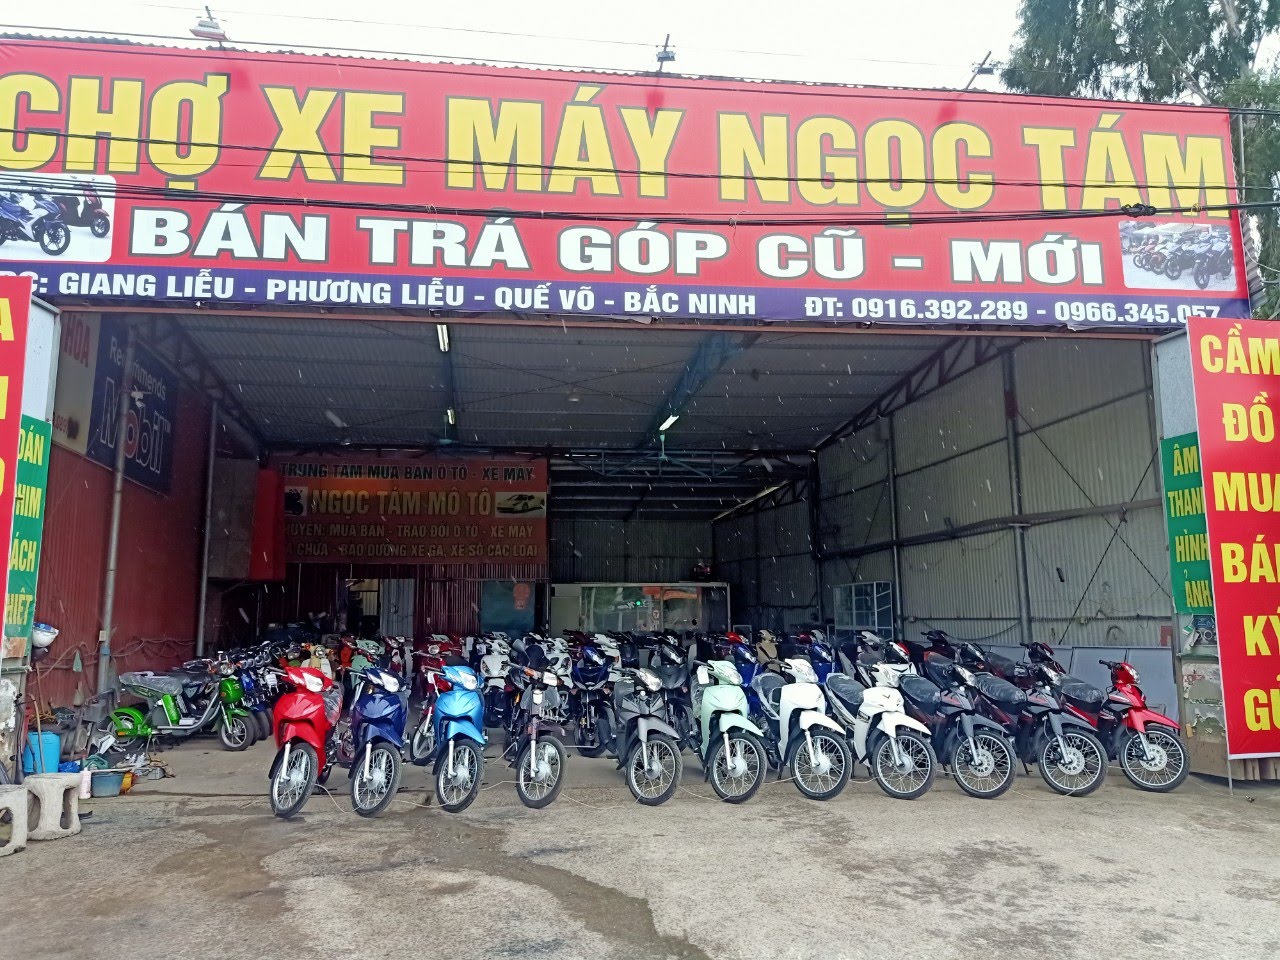 Mua bán xe máy cũ tại Bắc Ninh đảm bảo giá